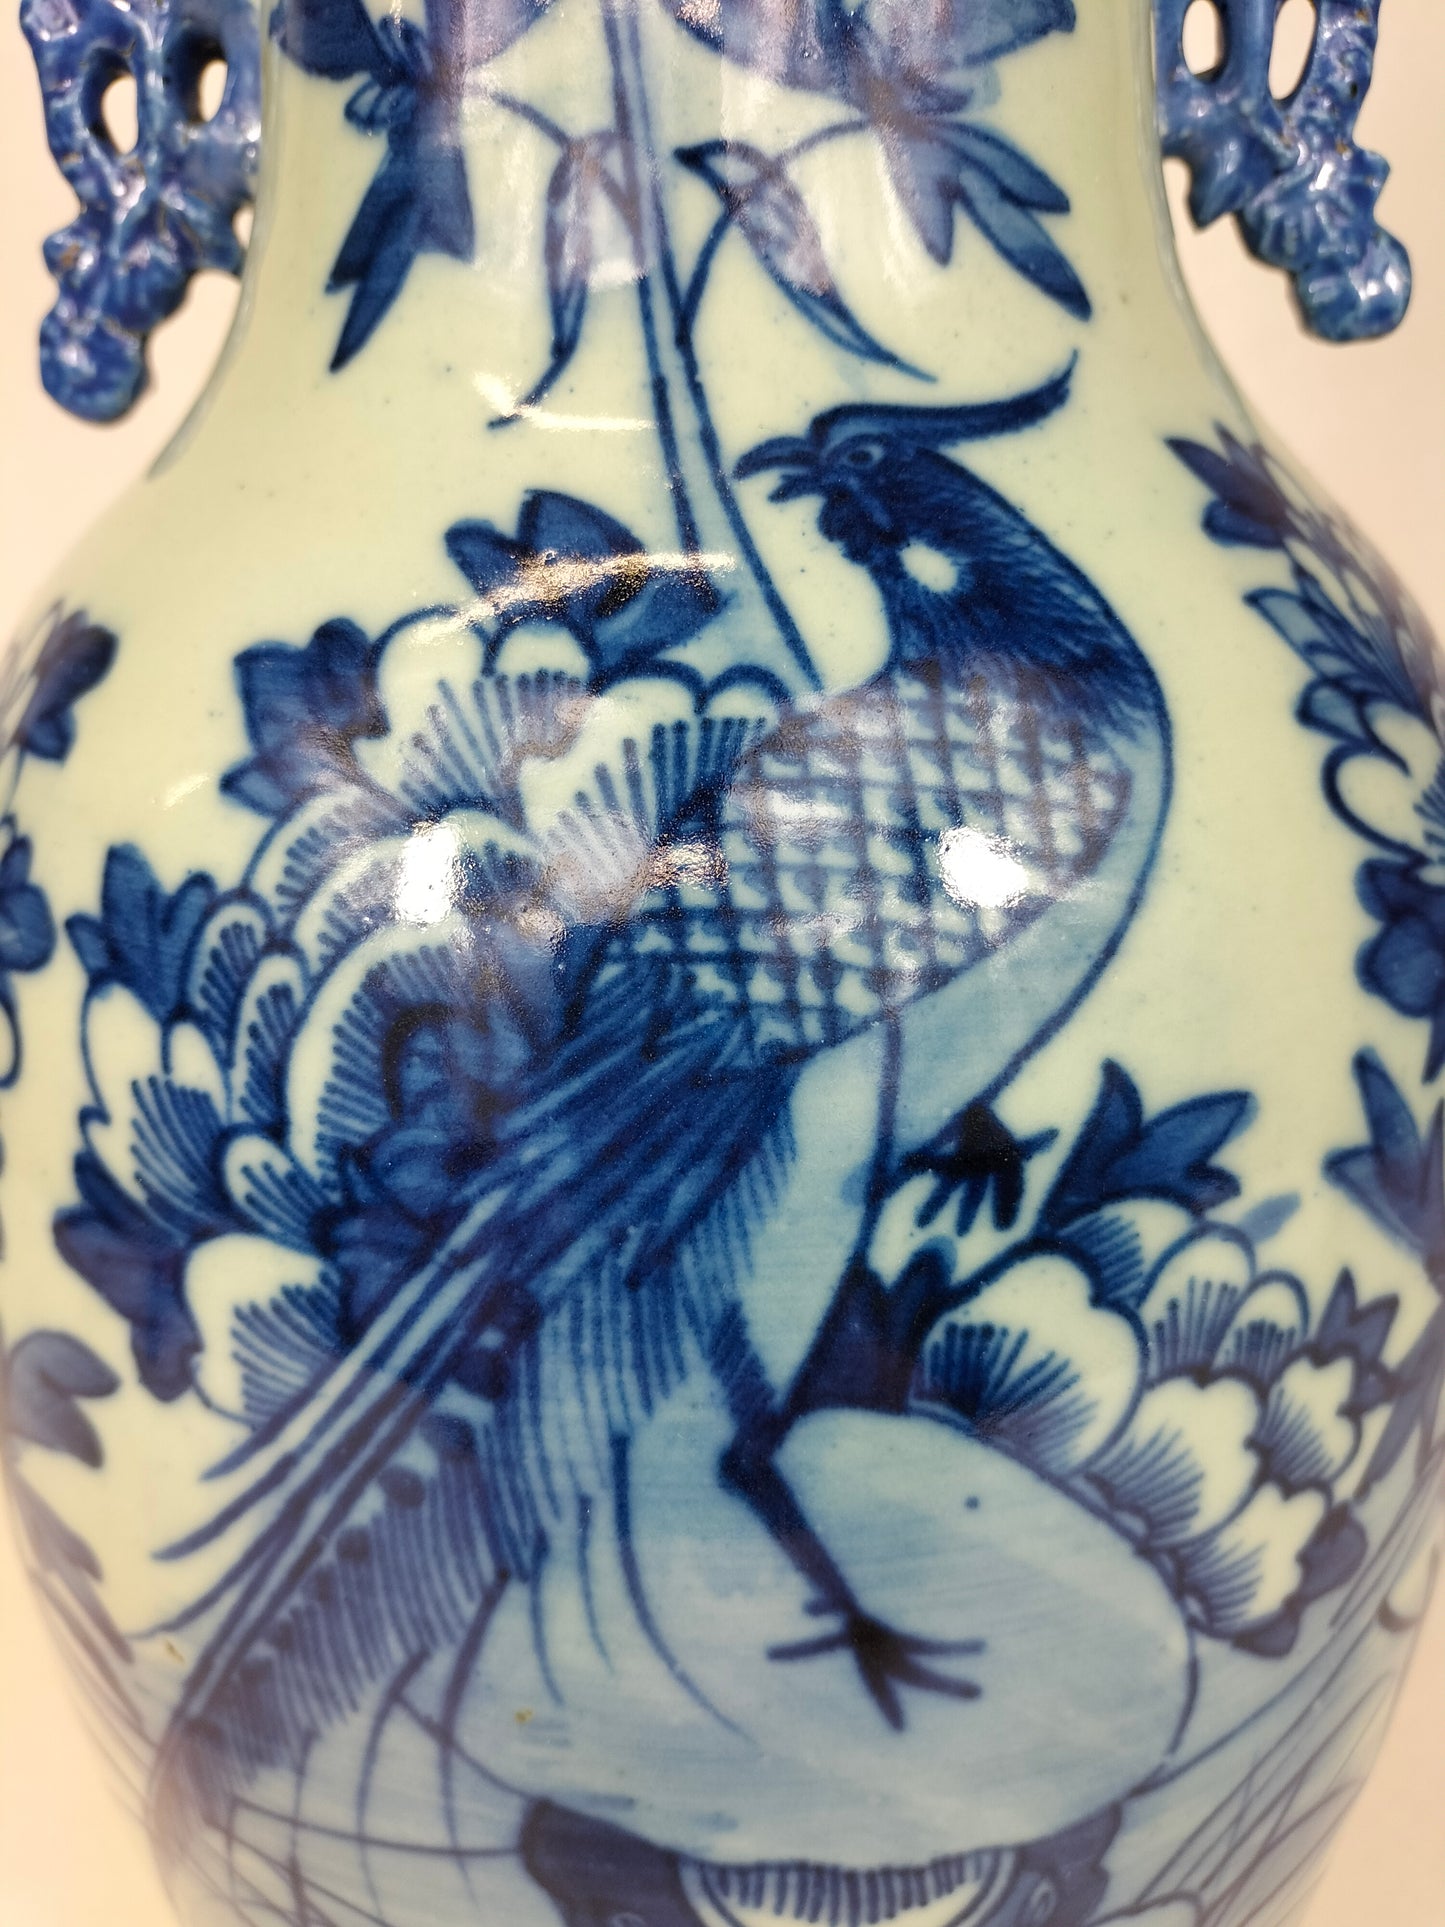 Antigo vaso chinês decorado com pássaros e flores // Dinastia Qing - século XIX